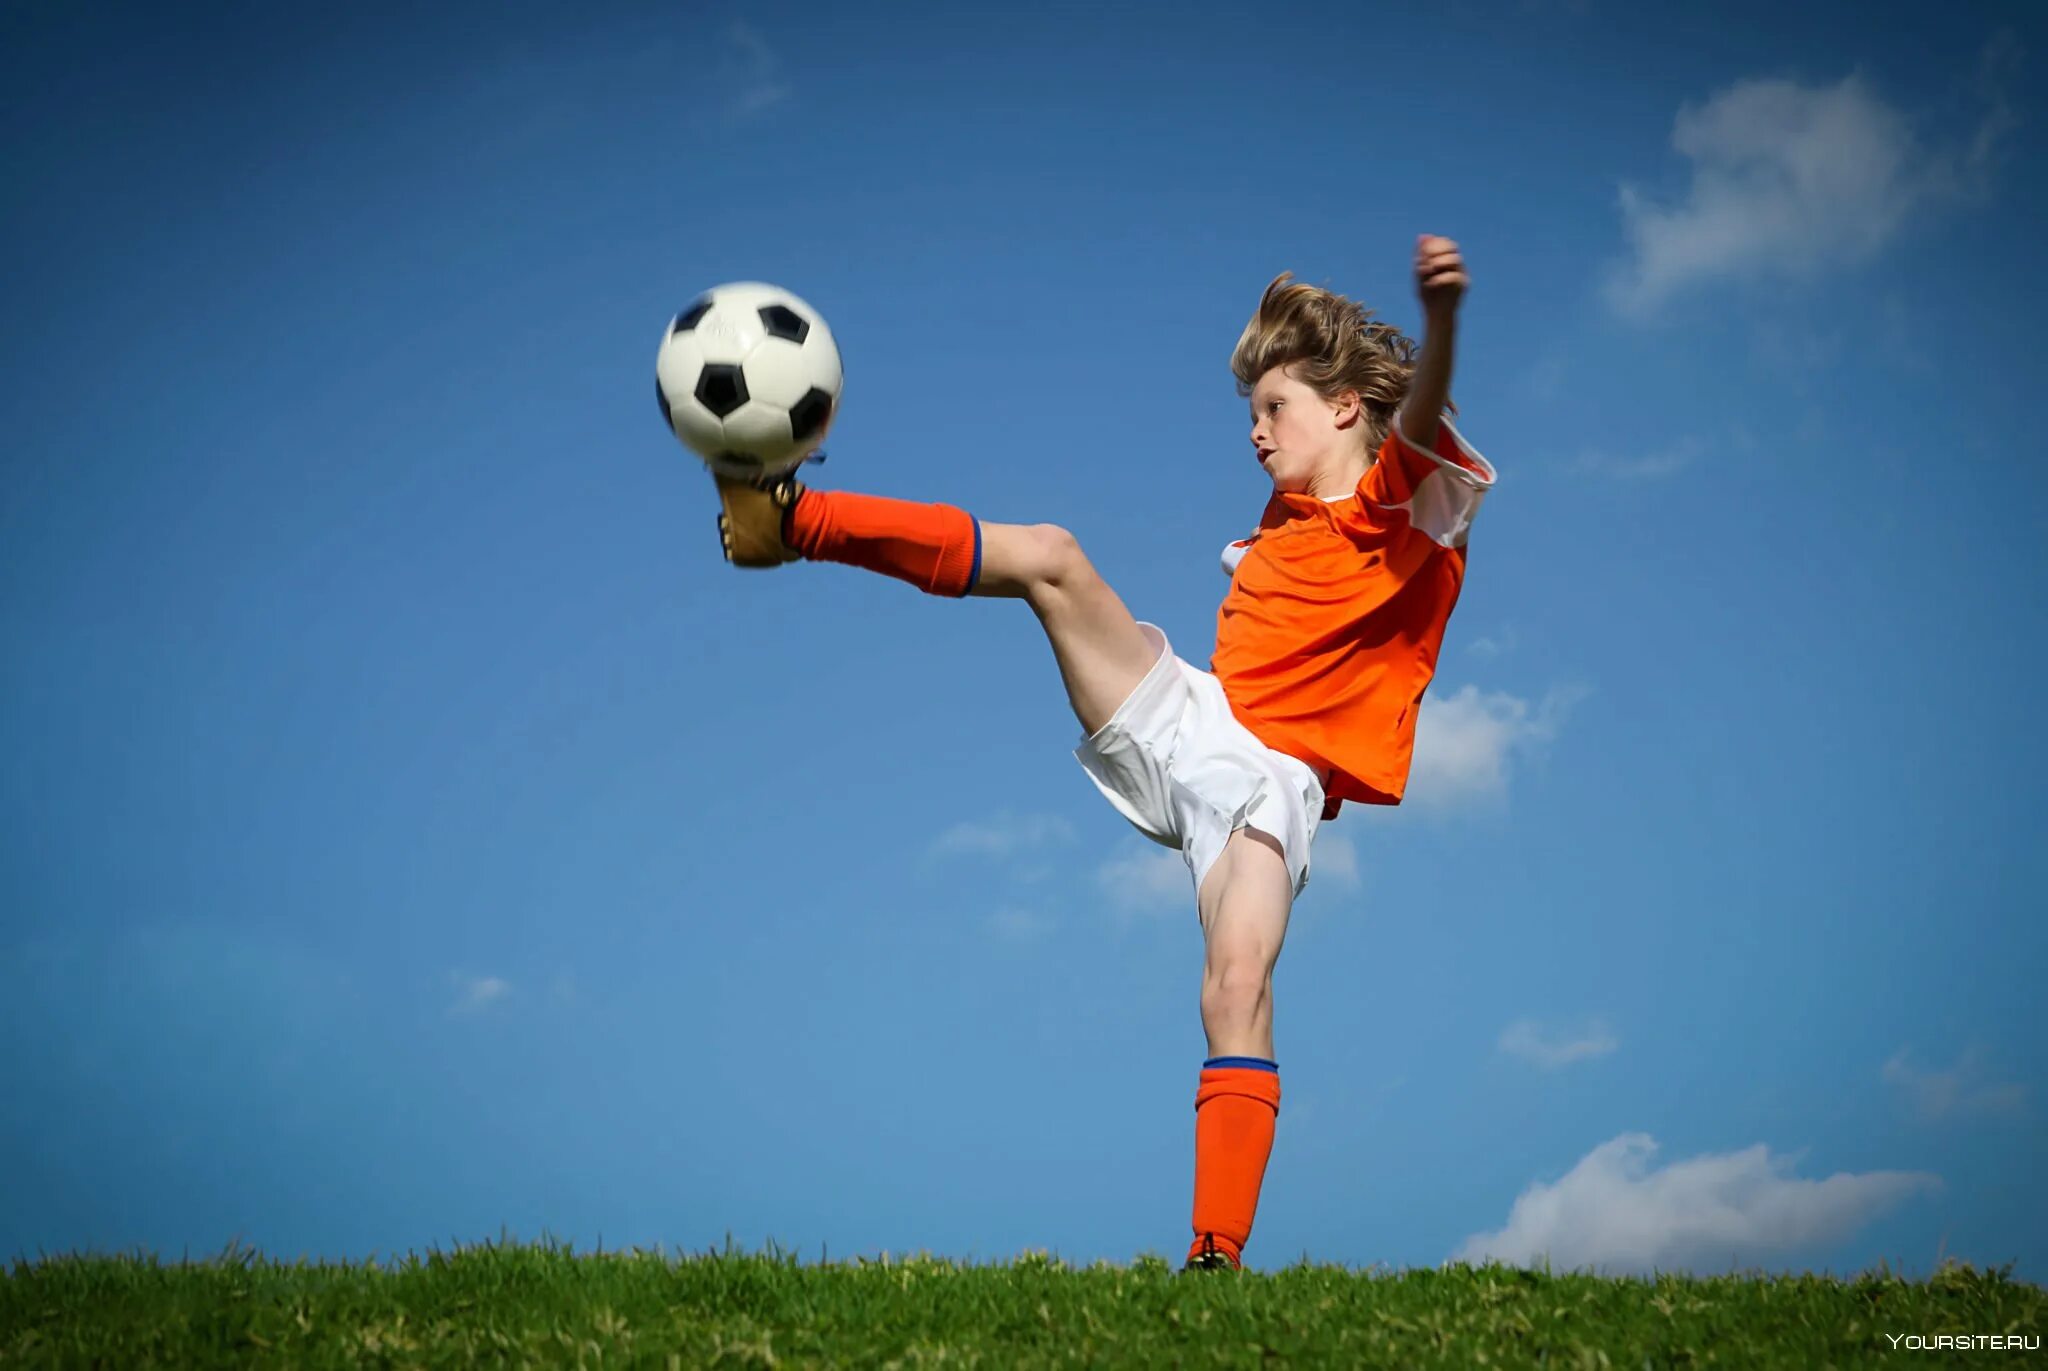 Спортсмены играющие в игры. Спорт дети. Мальчик с футбольным мячом. Ребенок с футбольным мячом. Подросток с футбольным мячом.